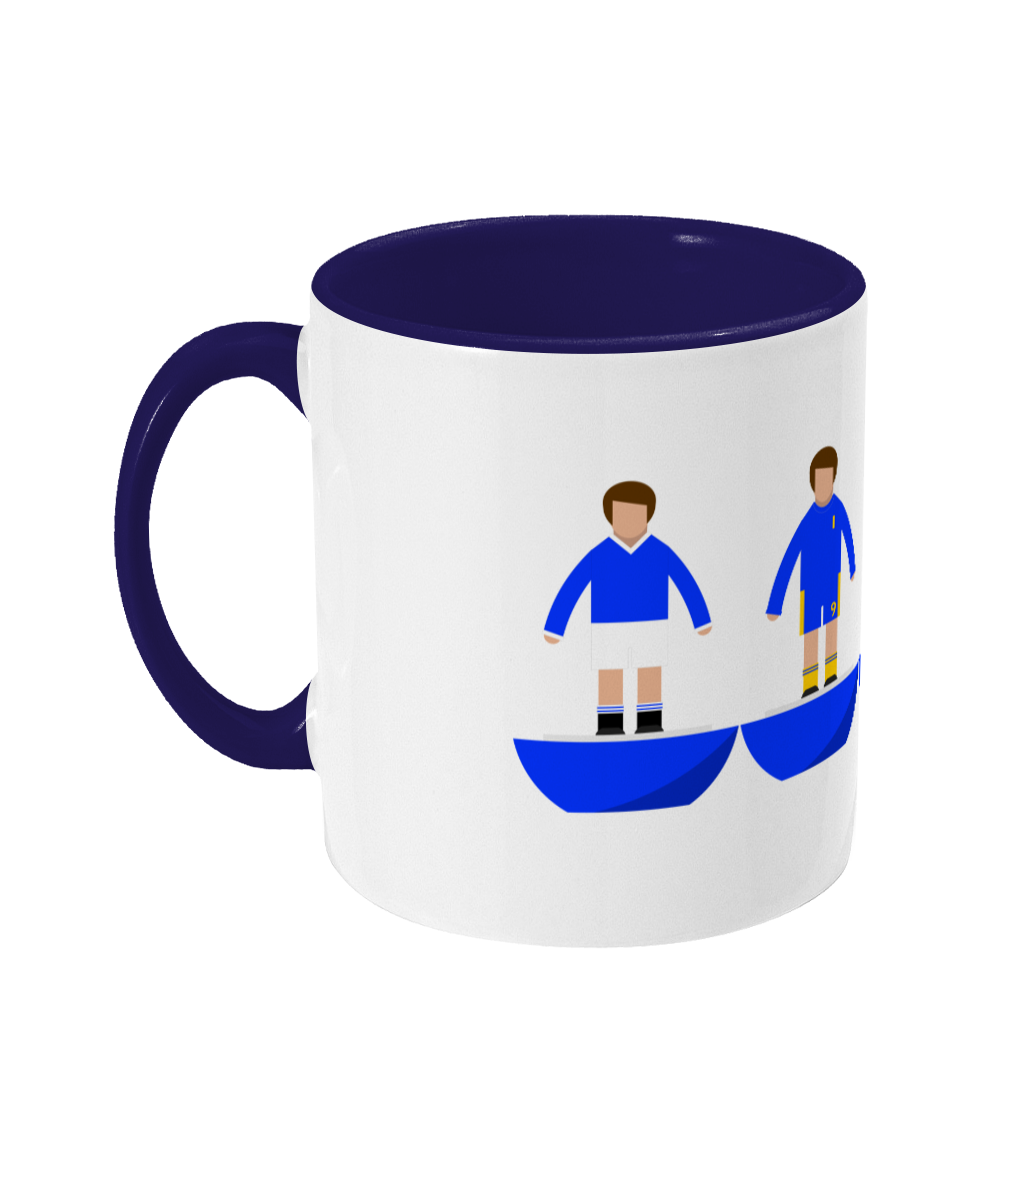 Football Kits 'Chelsea combined' Mug